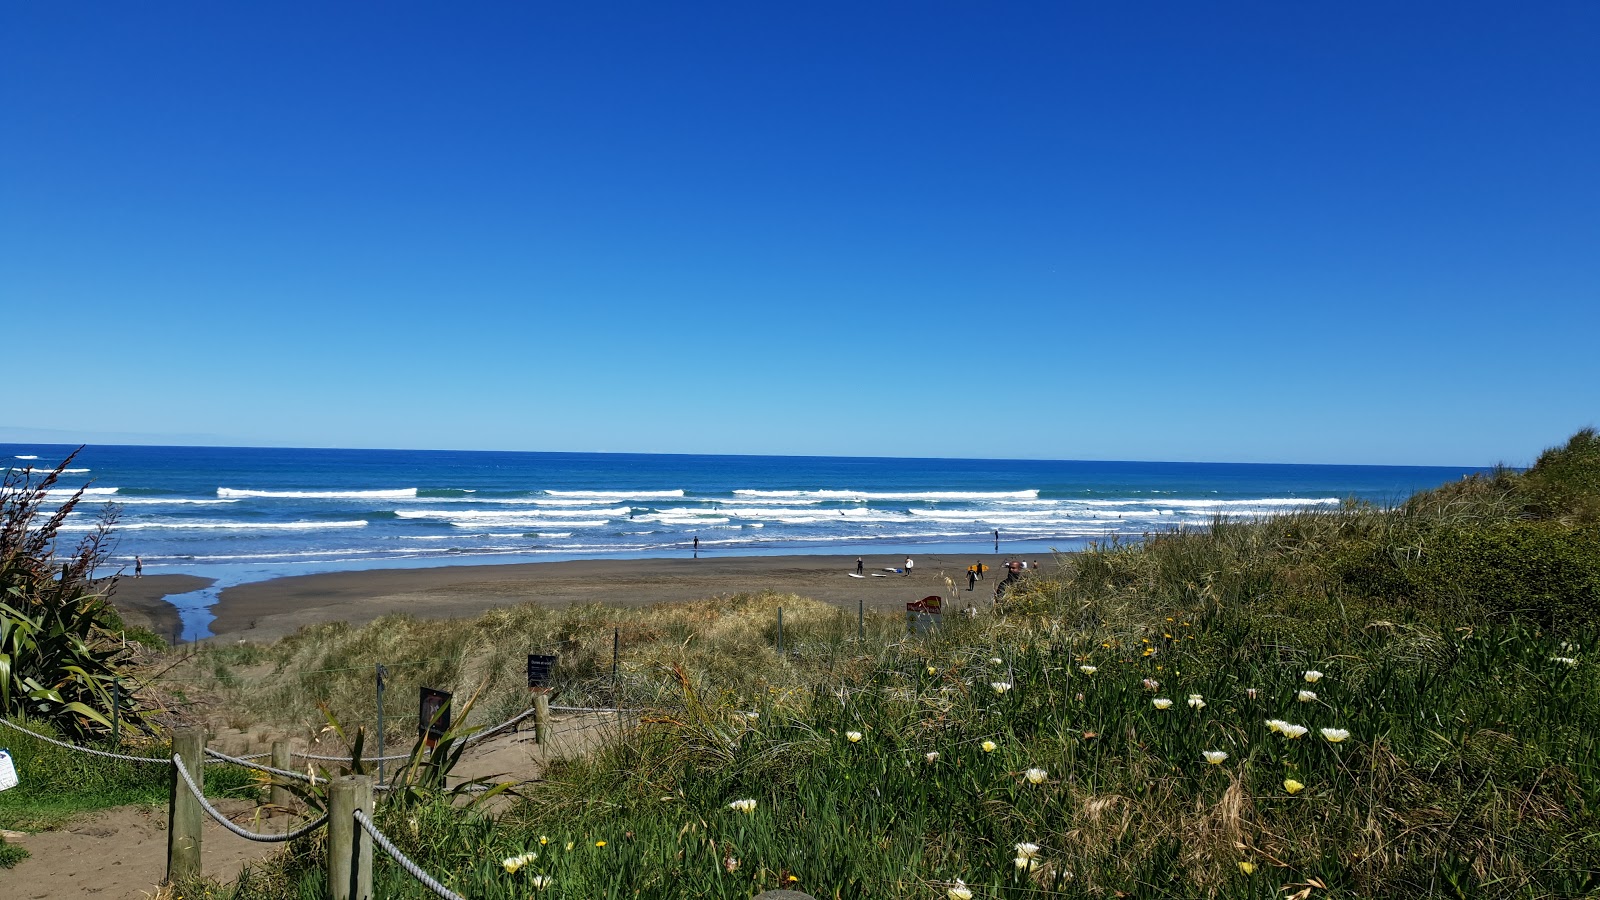 Zdjęcie Muriwai Beach - popularne miejsce wśród znawców relaksu